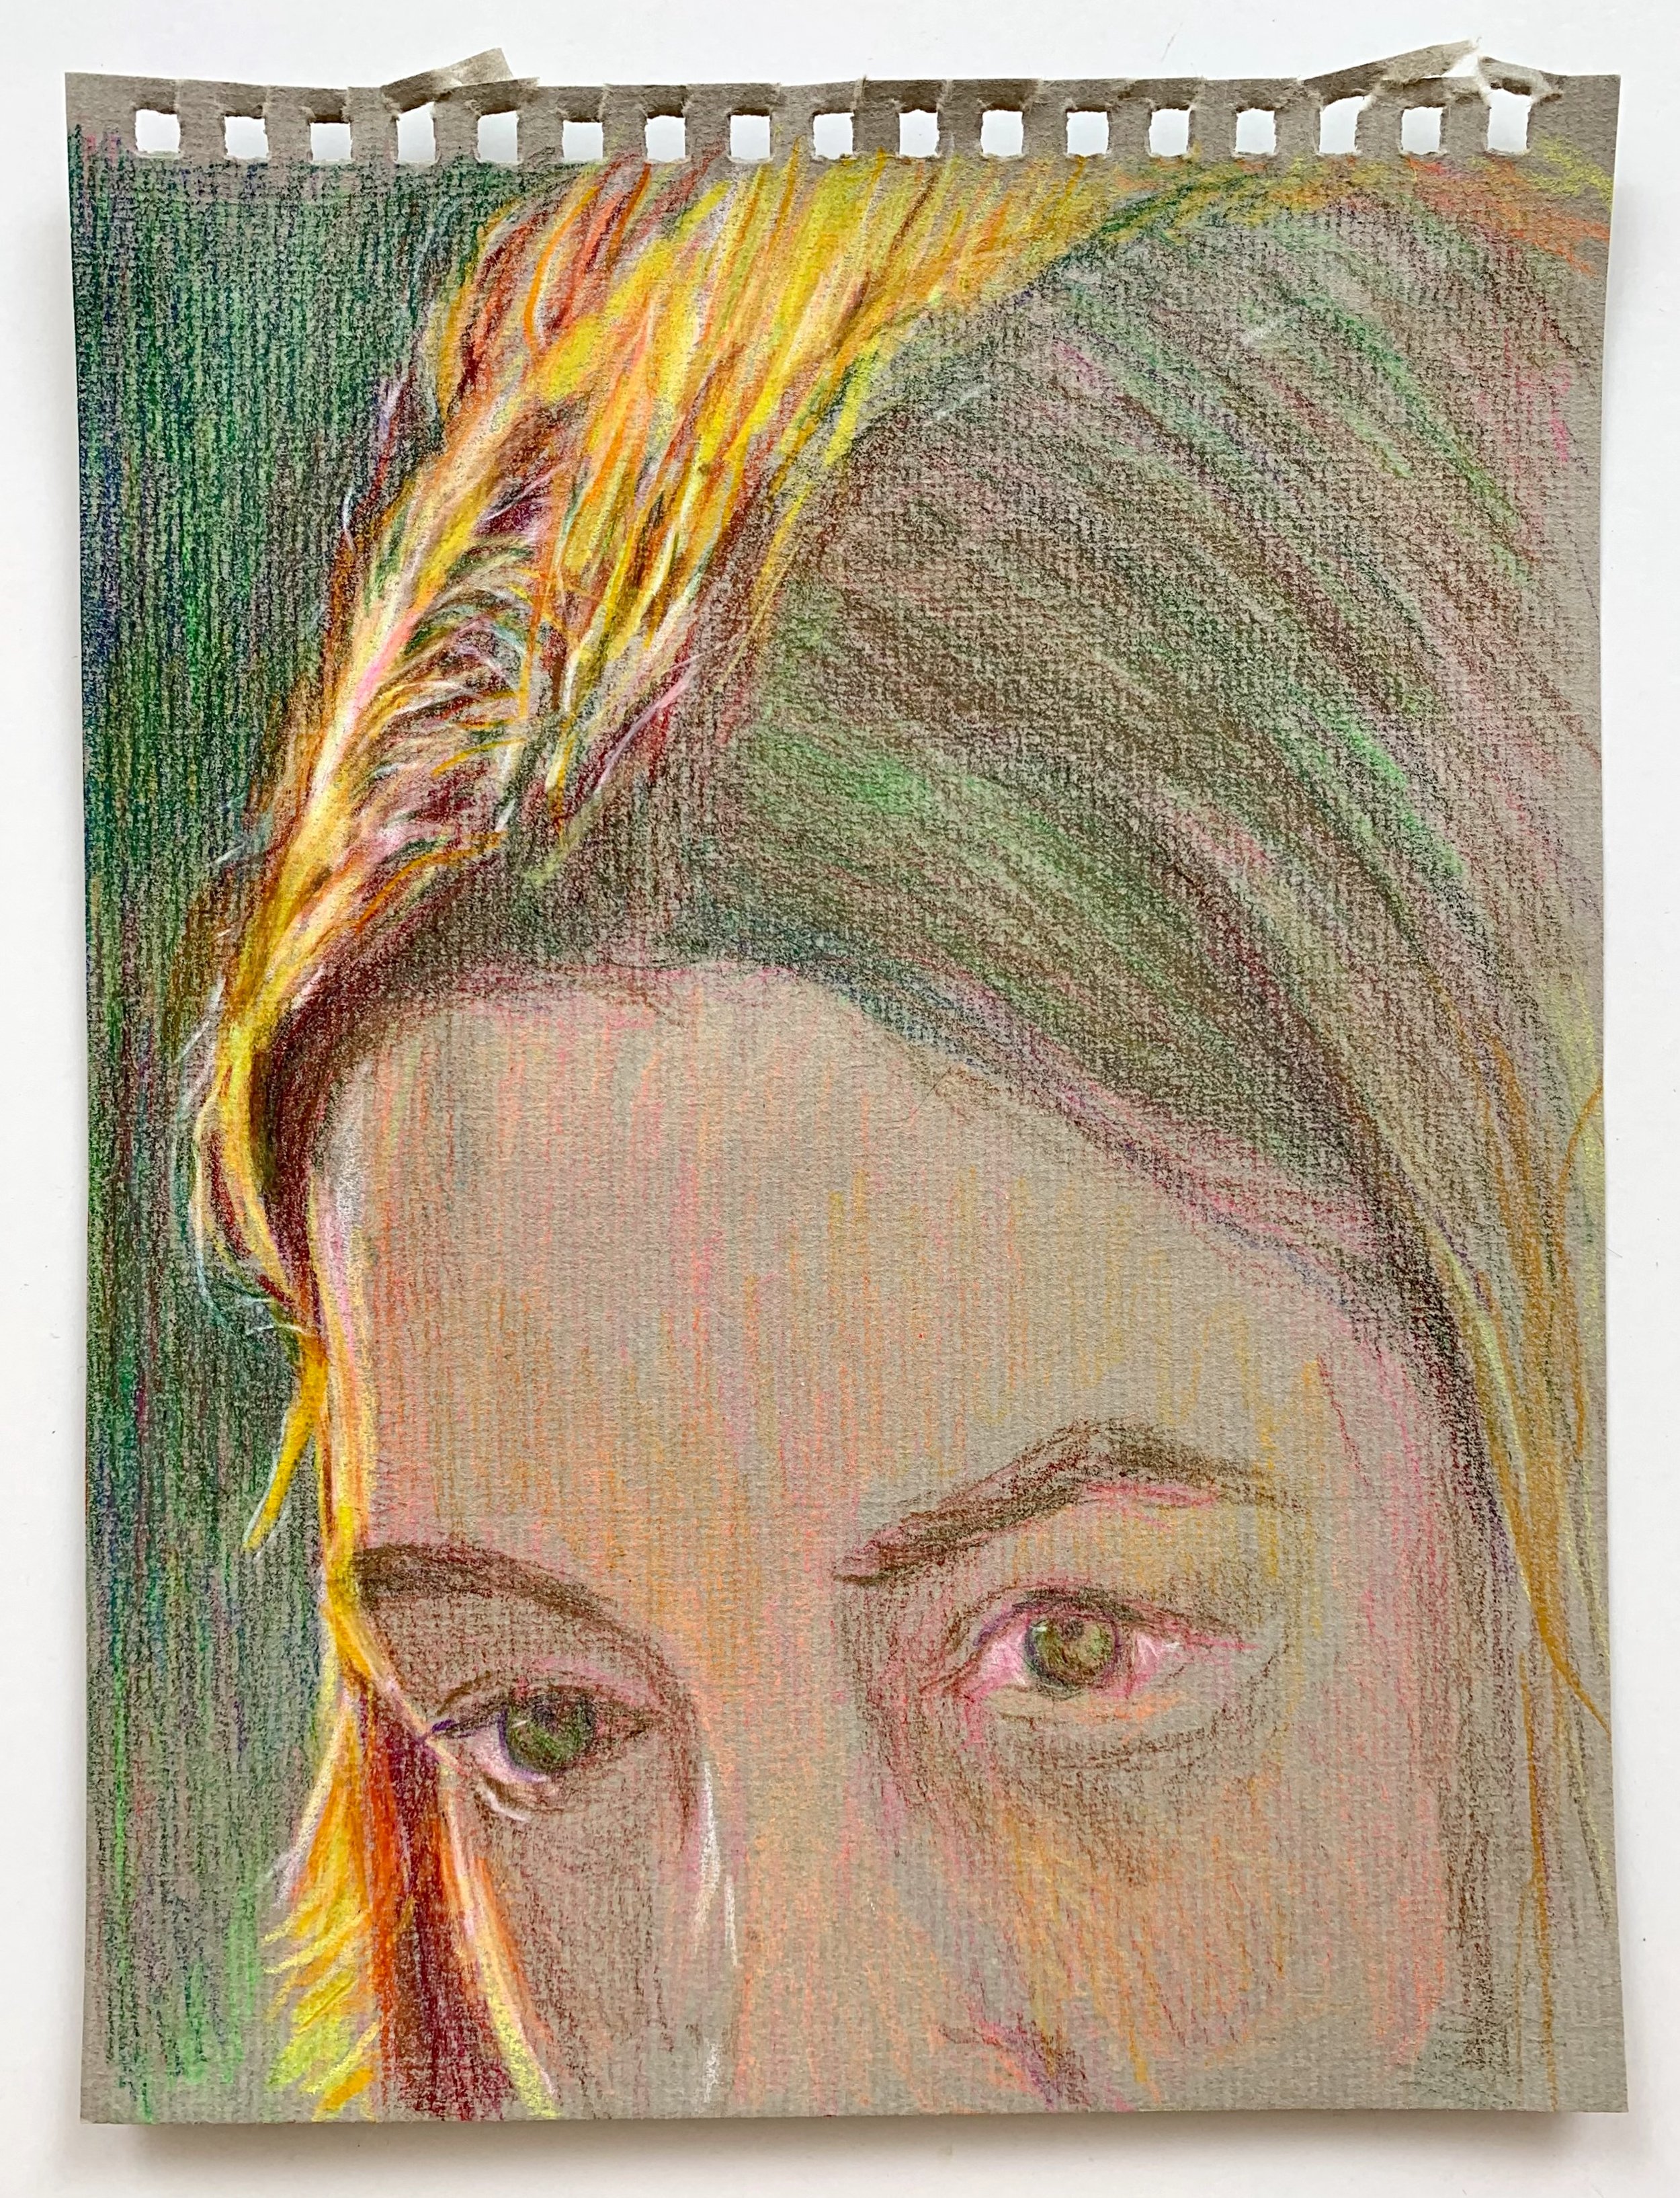  Gaze, 2022  Prismacolor pencil and Caran d’ache crayon on toned paper  20.5 x 15.5 cm 